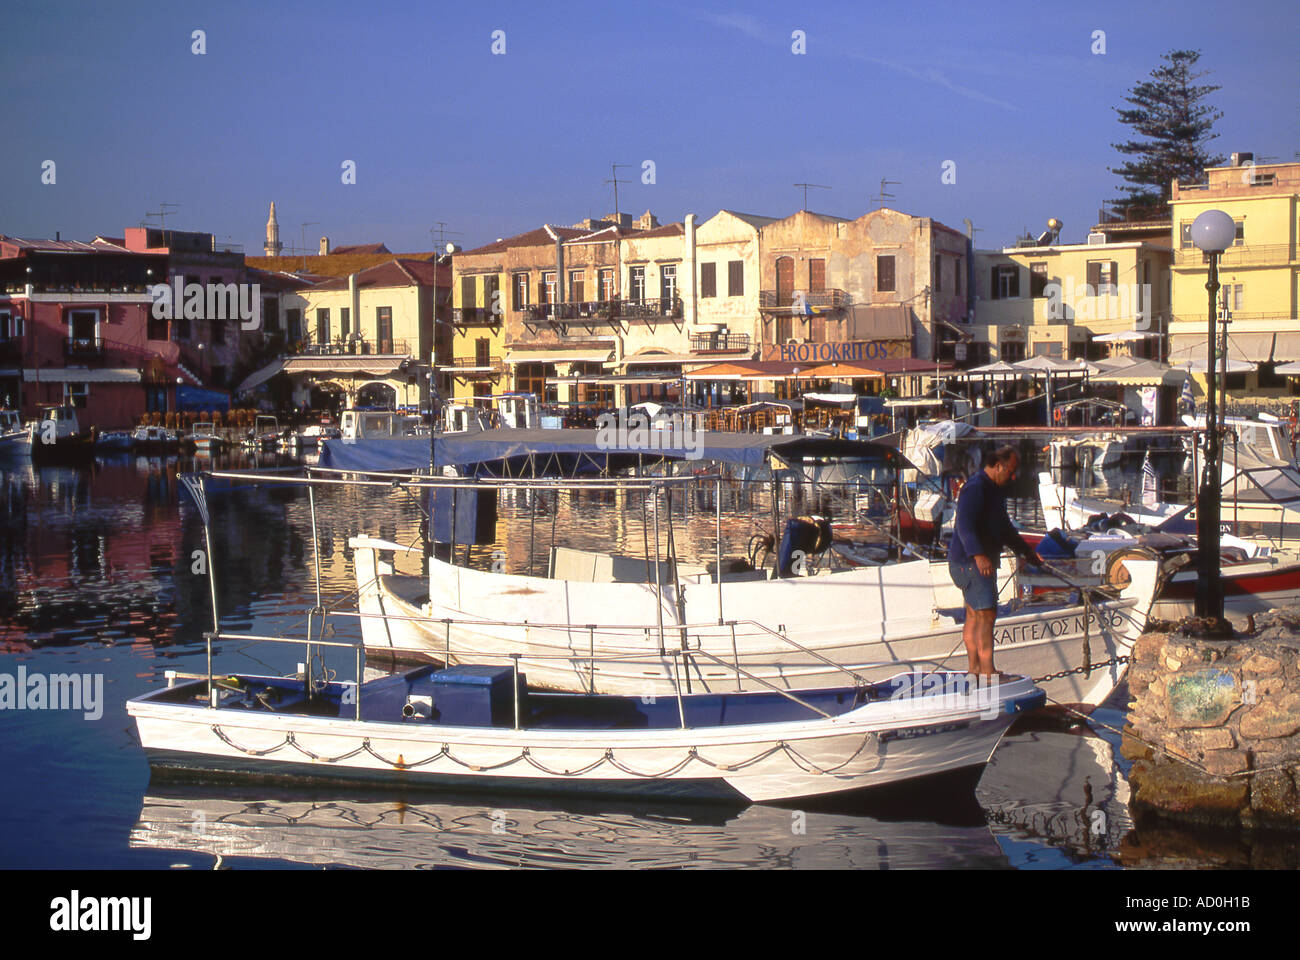 Griechischen Angelboote/Fischerboote vertäut im Hafen von Rethymnon Rethymnon Kreta Griechenland Stockfoto